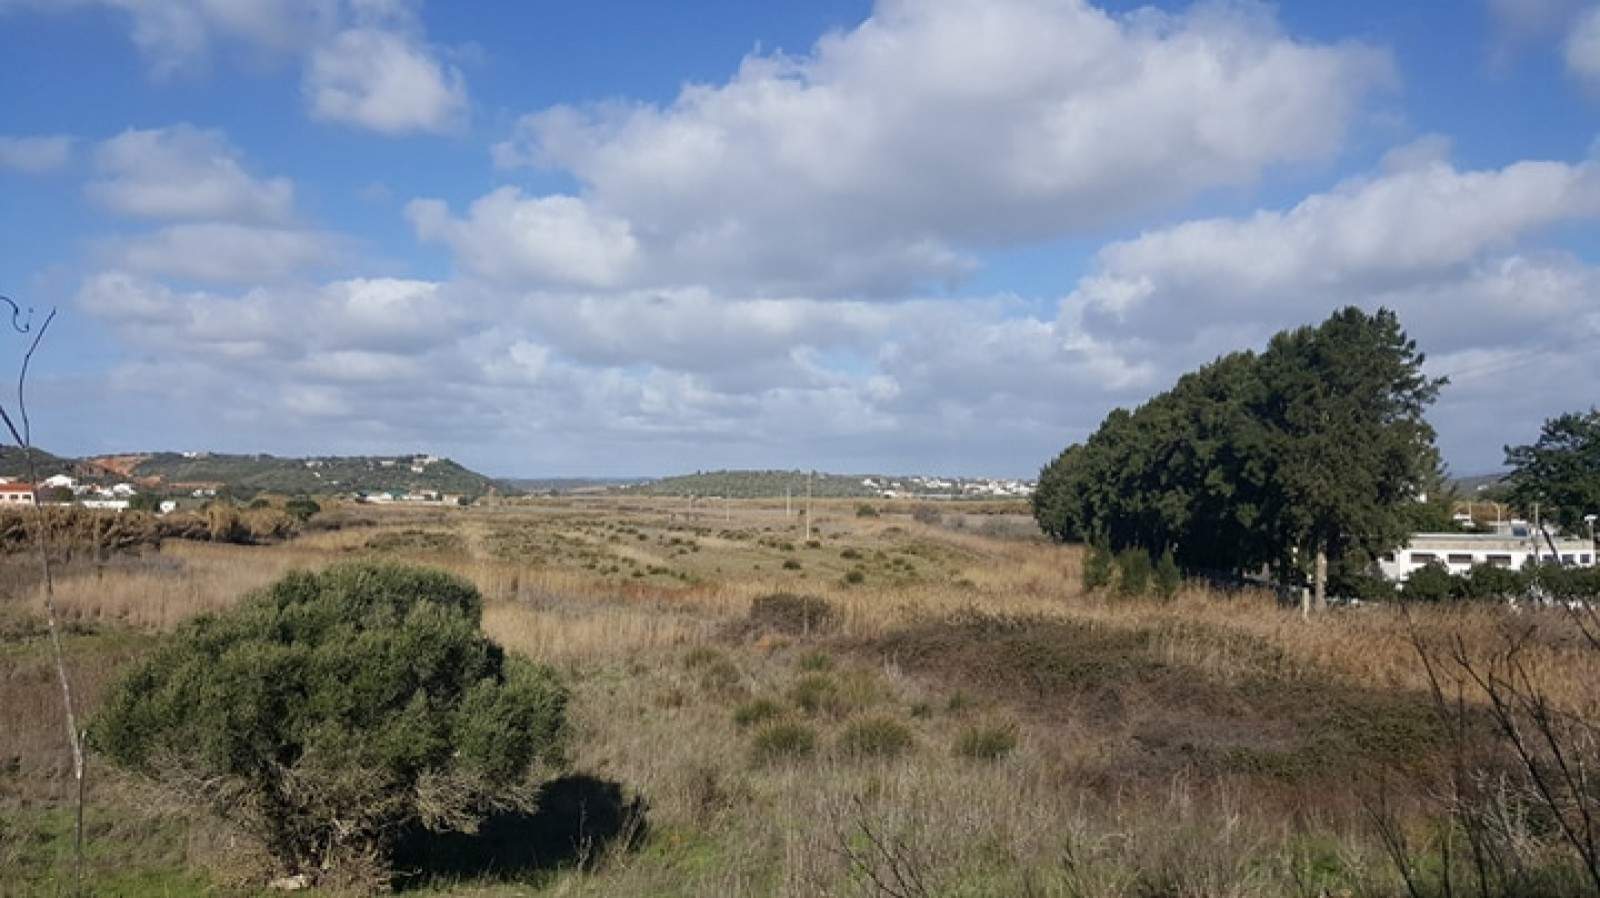 Land zum Verkauf, in der Nähe von Stränden und Golfplätzen, Lagos, Algarve, Portugal_72766